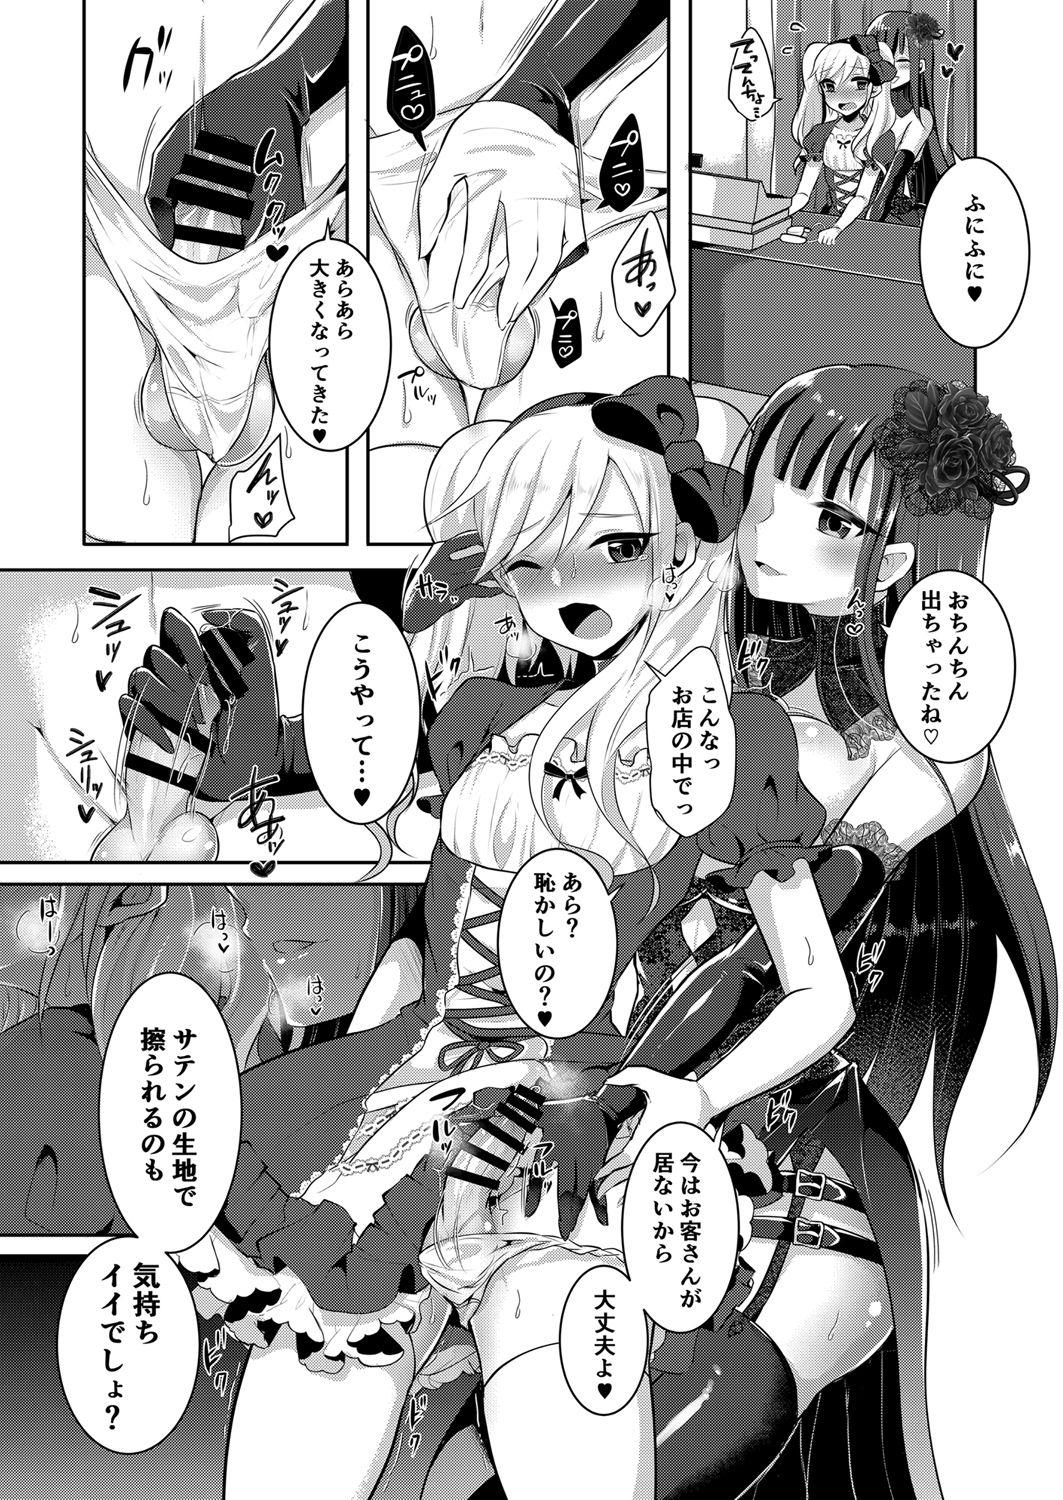 Teenager Boku ga Hitomebore Shita Gothic Onee-san wa Futanari datta Ken 3 - Original Str8 - Page 7